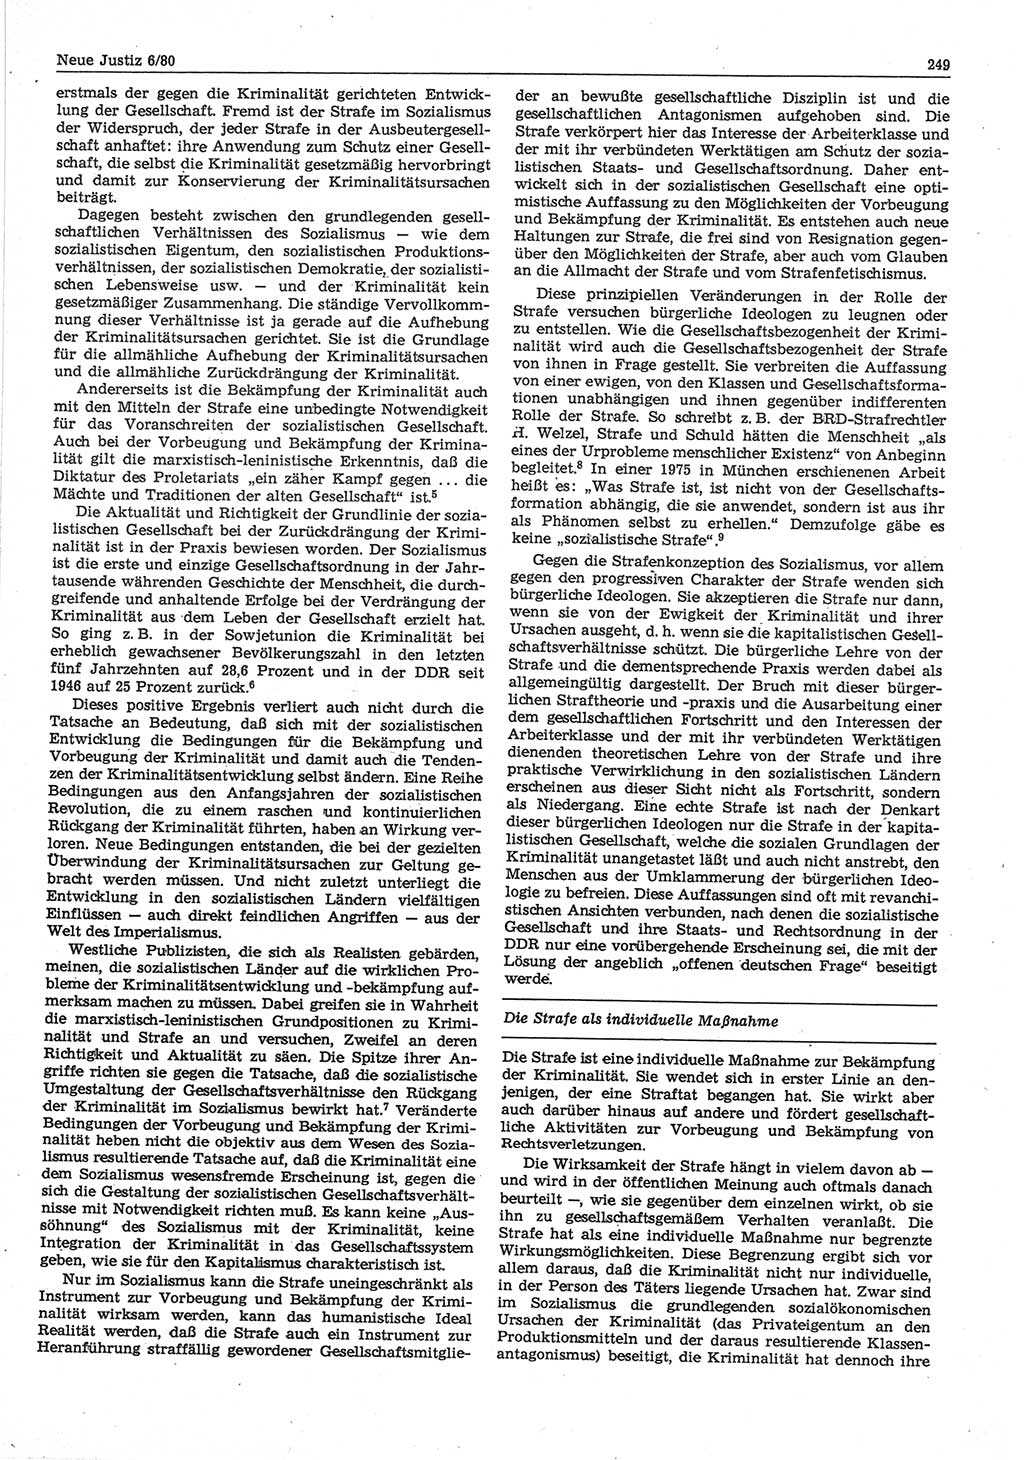 Neue Justiz (NJ), Zeitschrift für sozialistisches Recht und Gesetzlichkeit [Deutsche Demokratische Republik (DDR)], 34. Jahrgang 1980, Seite 249 (NJ DDR 1980, S. 249)